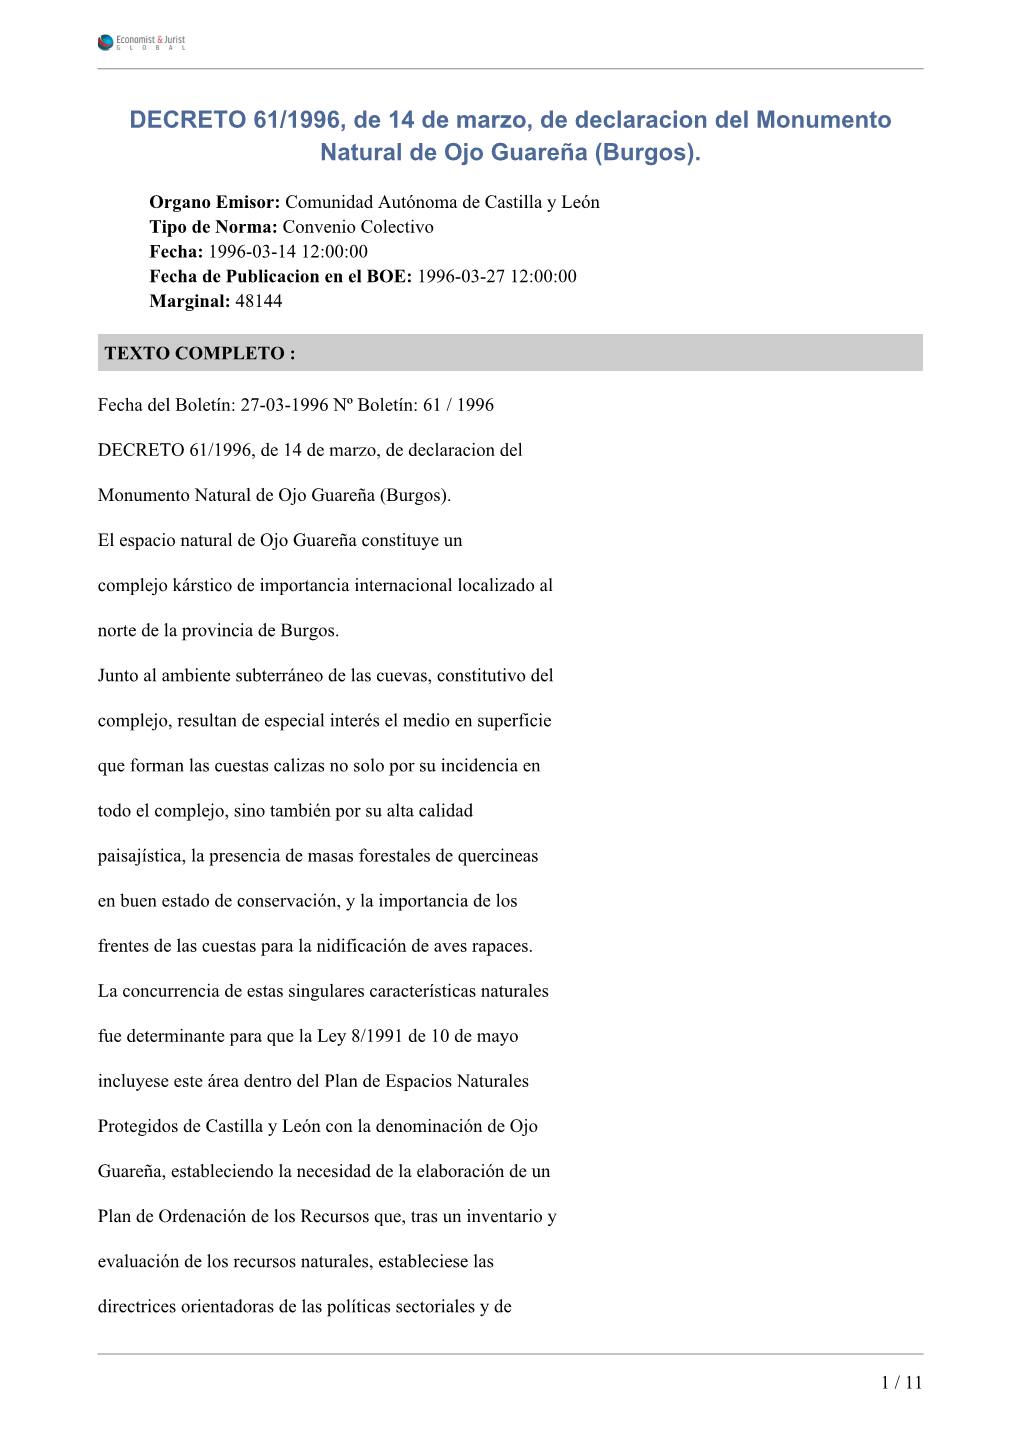 DECRETO 61/1996, De 14 De Marzo, De Declaracion Del Monumento Natural De Ojo Guareña (Burgos)